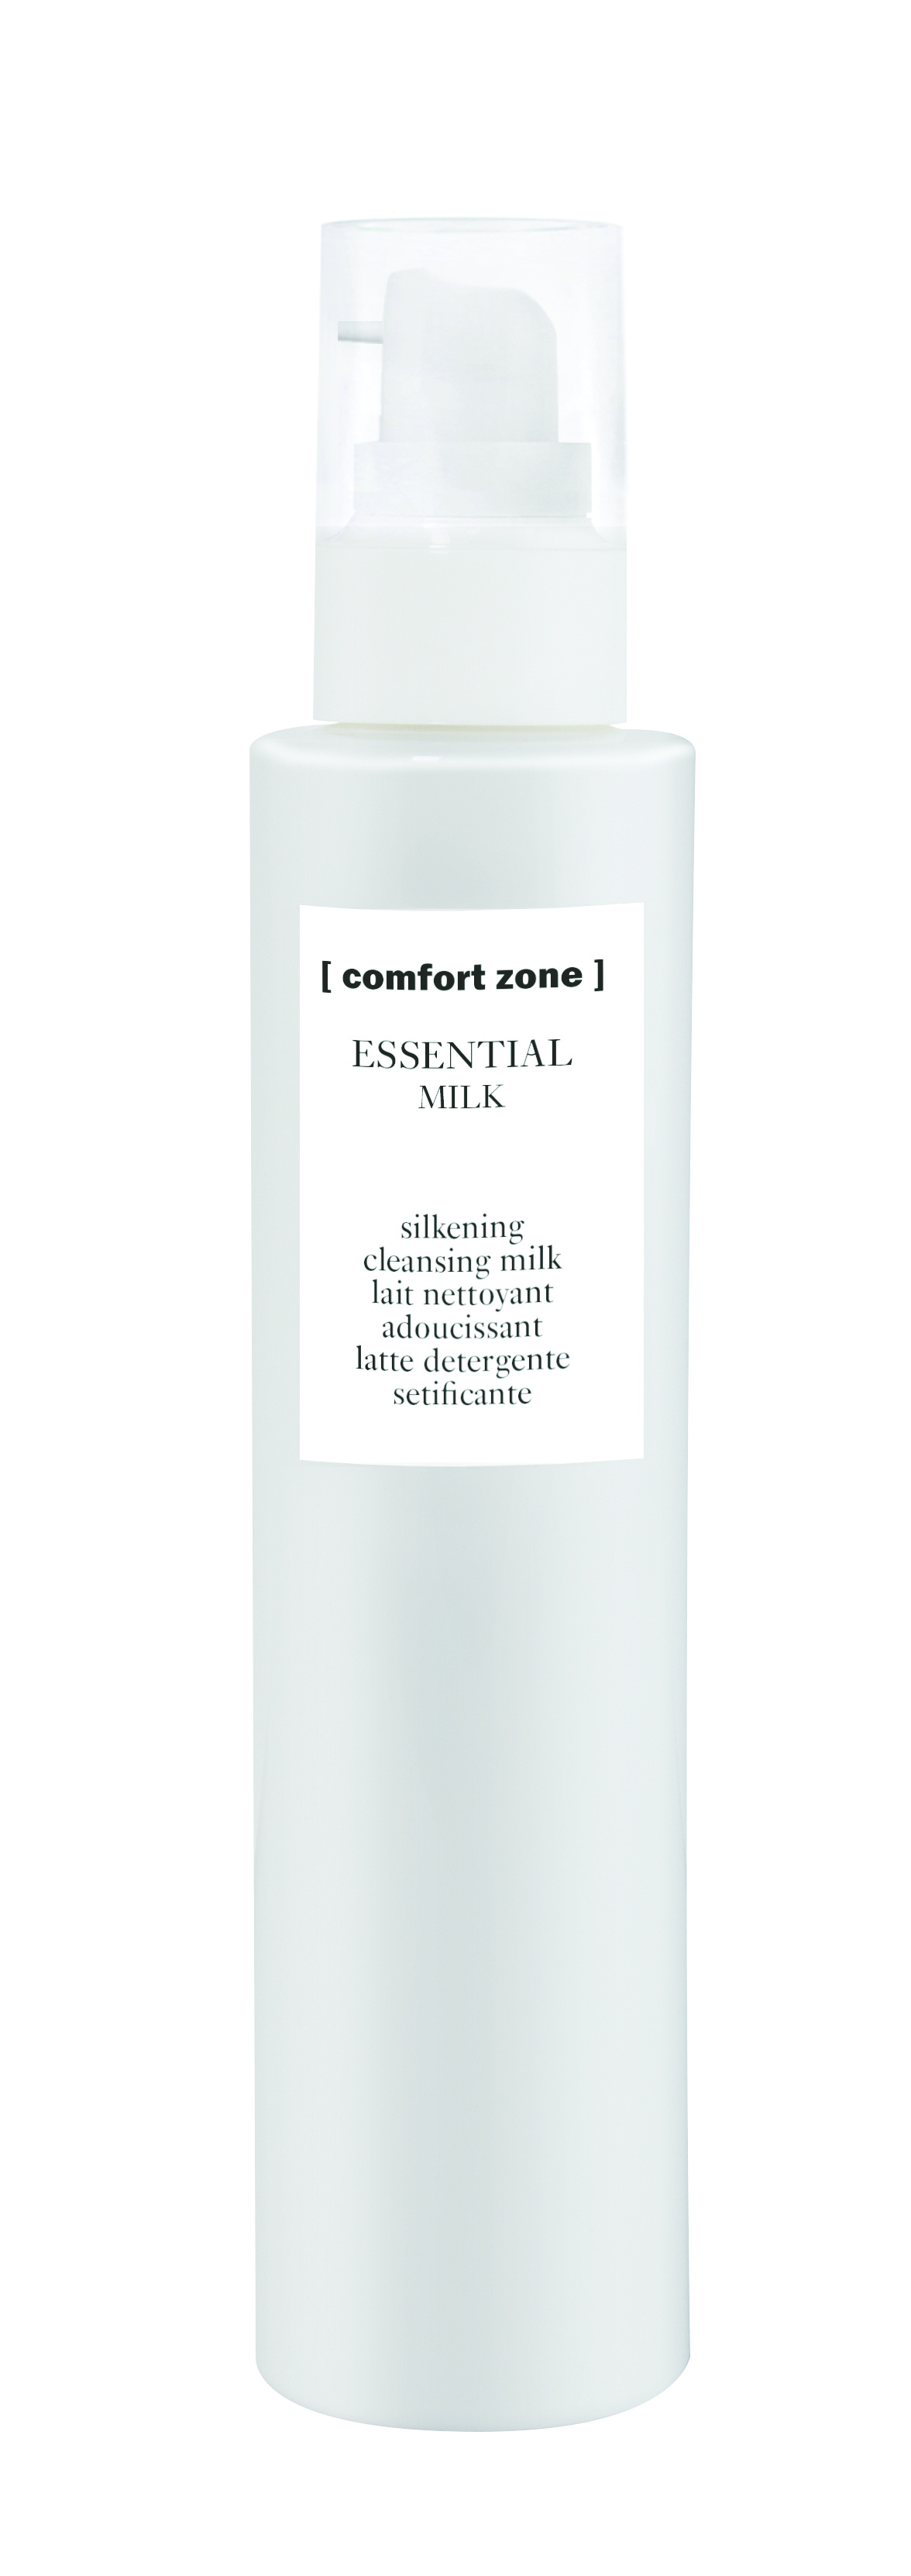 Comfort Zone Essential Milk